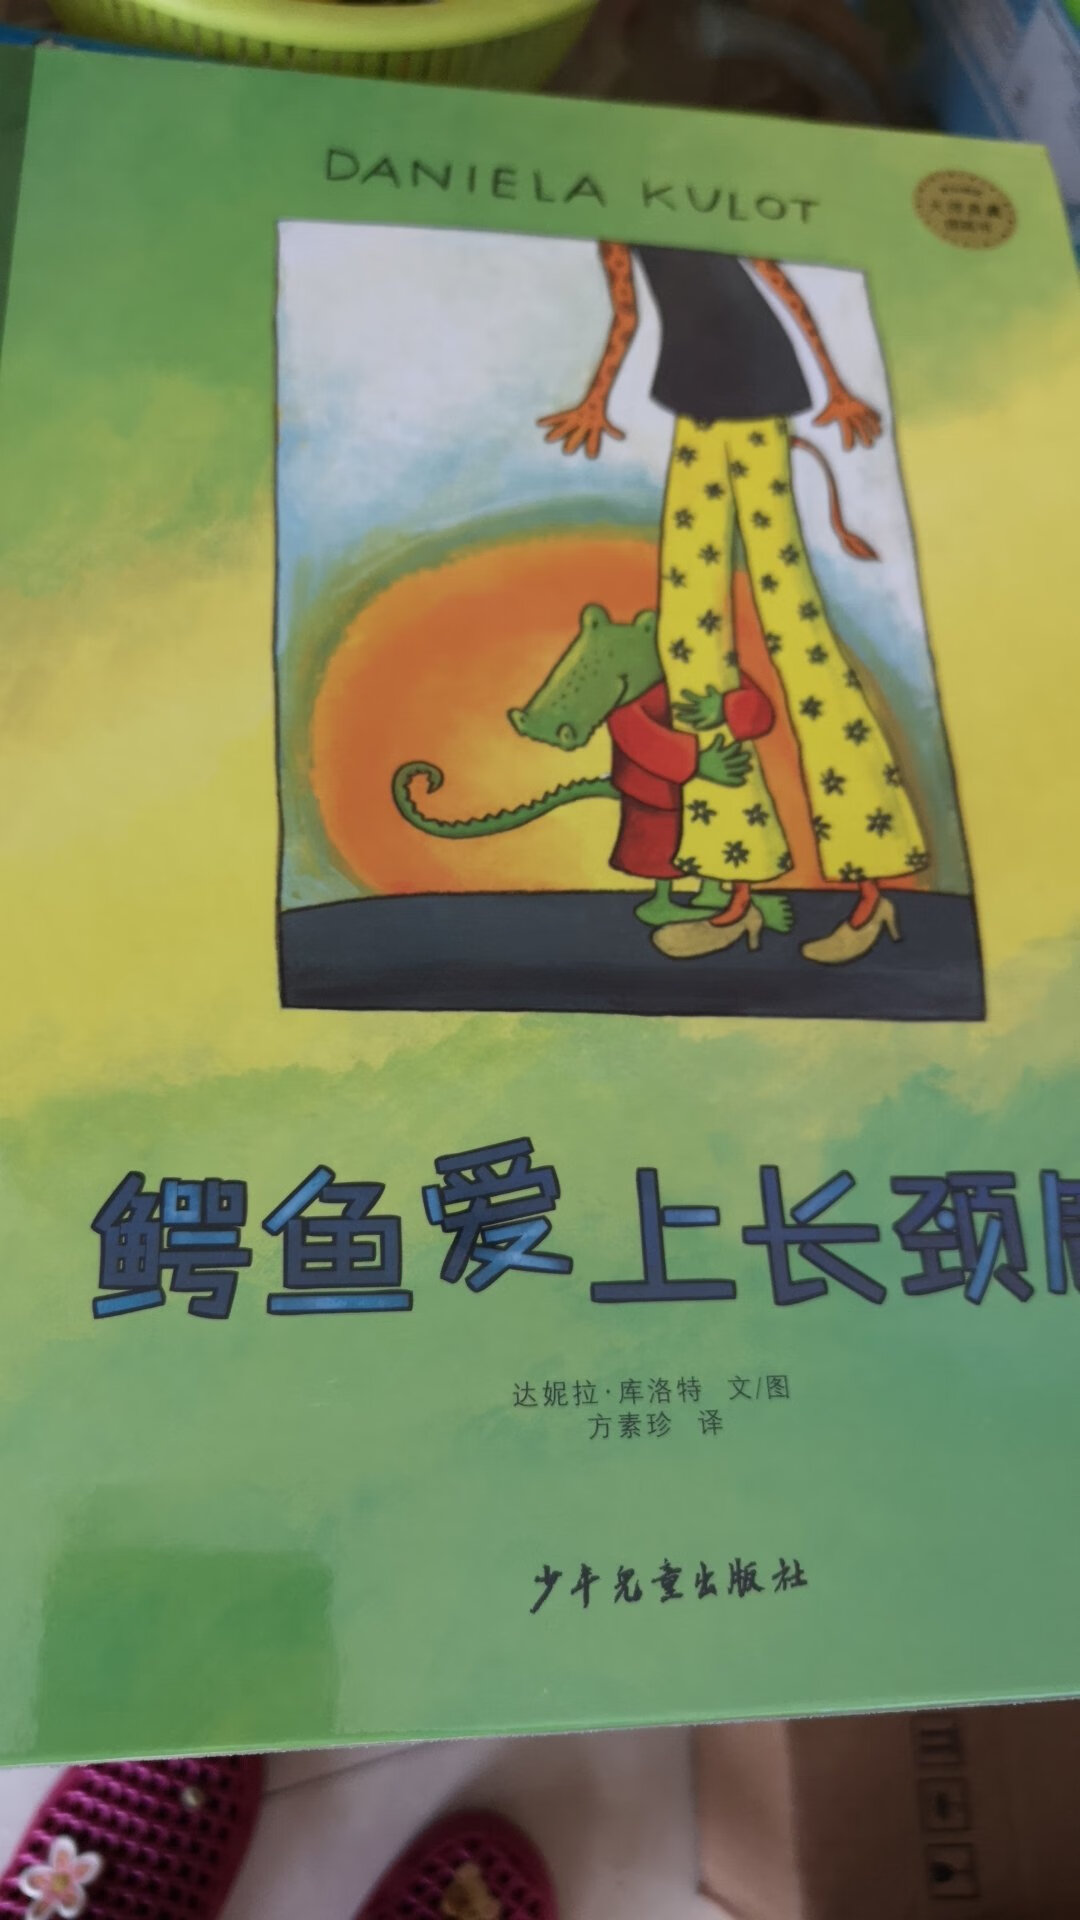 大师典藏图画书。鳄鱼长颈鹿系列。这次趁活动就入了，教孩子怎么去爱的好绘本。